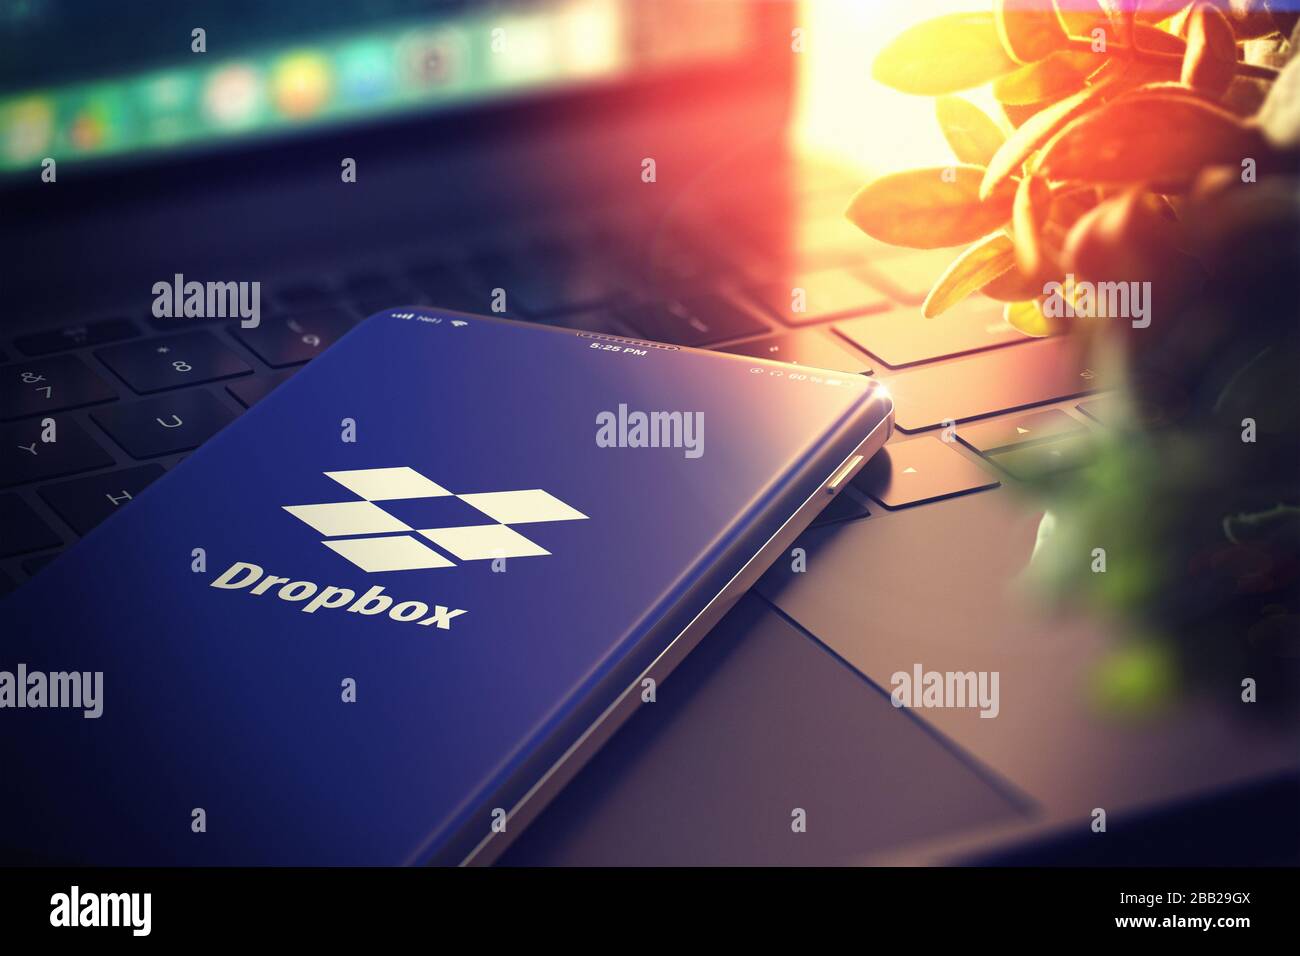 Dropbox sur l'écran du smartphone. Dropbox est un service d'hébergement de fichiers qui offre le stockage dans le Cloud, la synchronisation de fichiers, le Personal Cloud et le logiciel client. Illustration tridimensionnelle. KIEV, UKRAINE-JANVIER, 2020. Banque D'Images